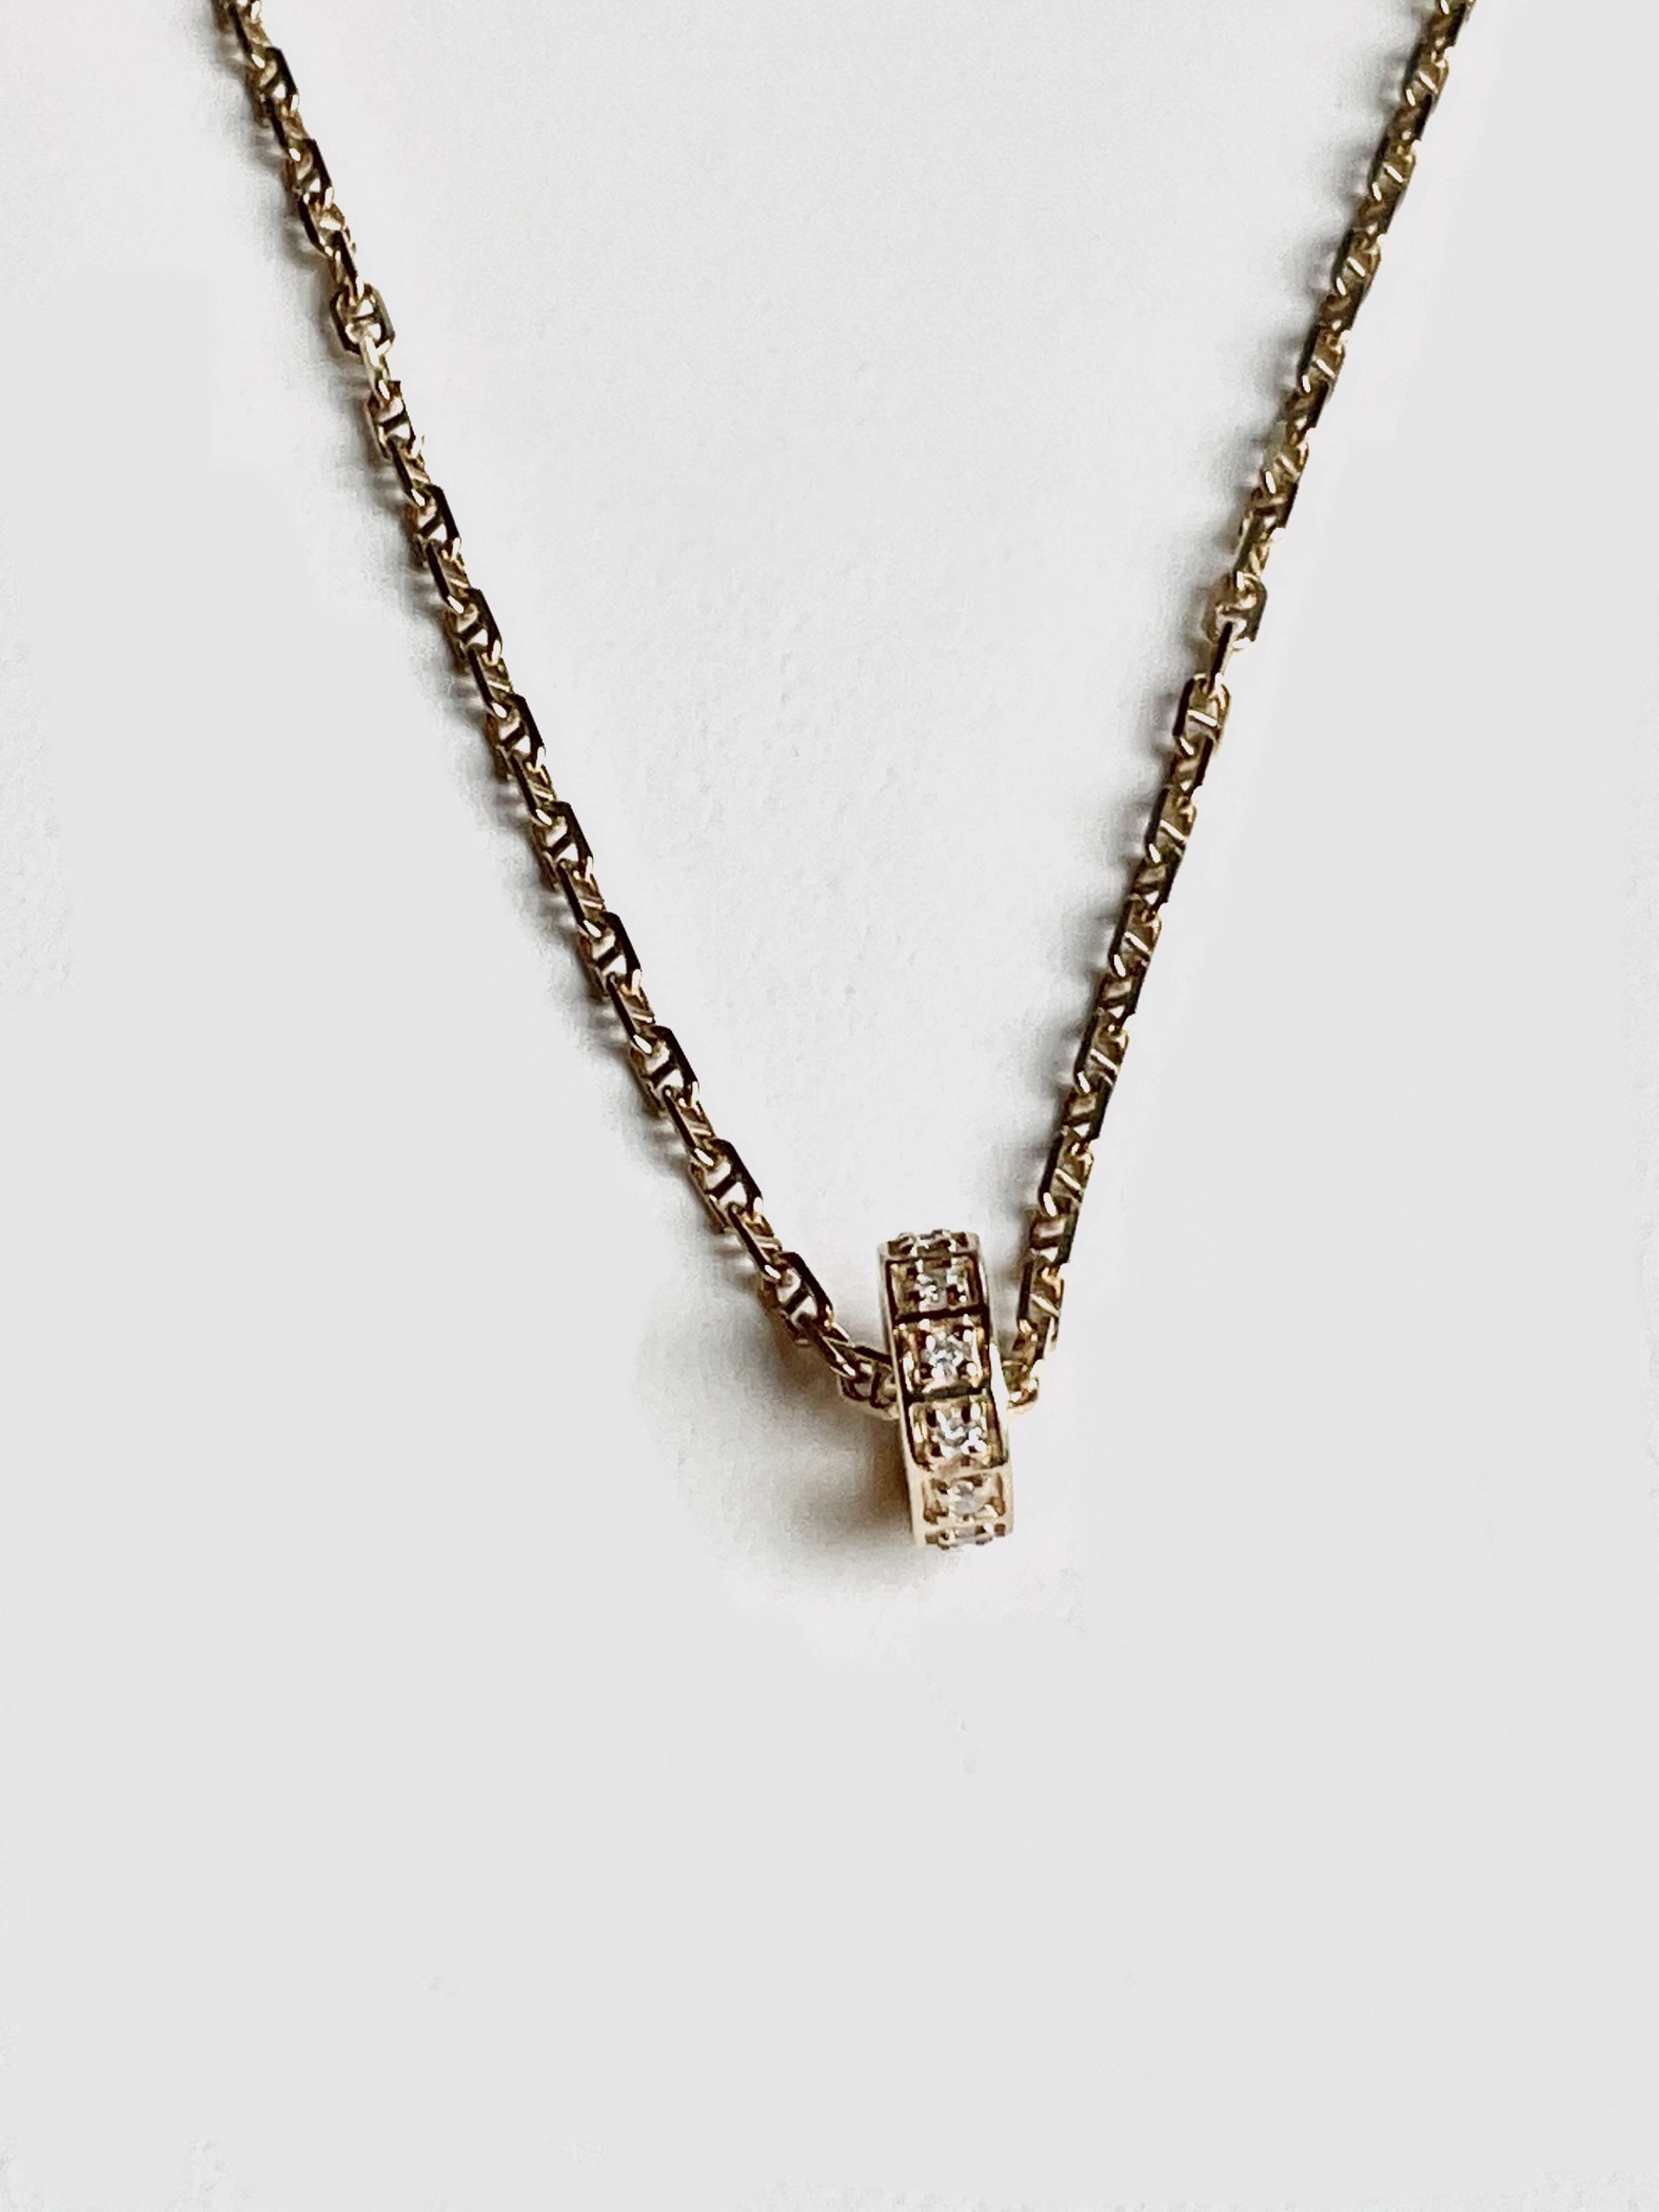 KB-N103 14K Gold Gucci-style Chain Diamond Circular Slide Pendant by Karen Birchmier